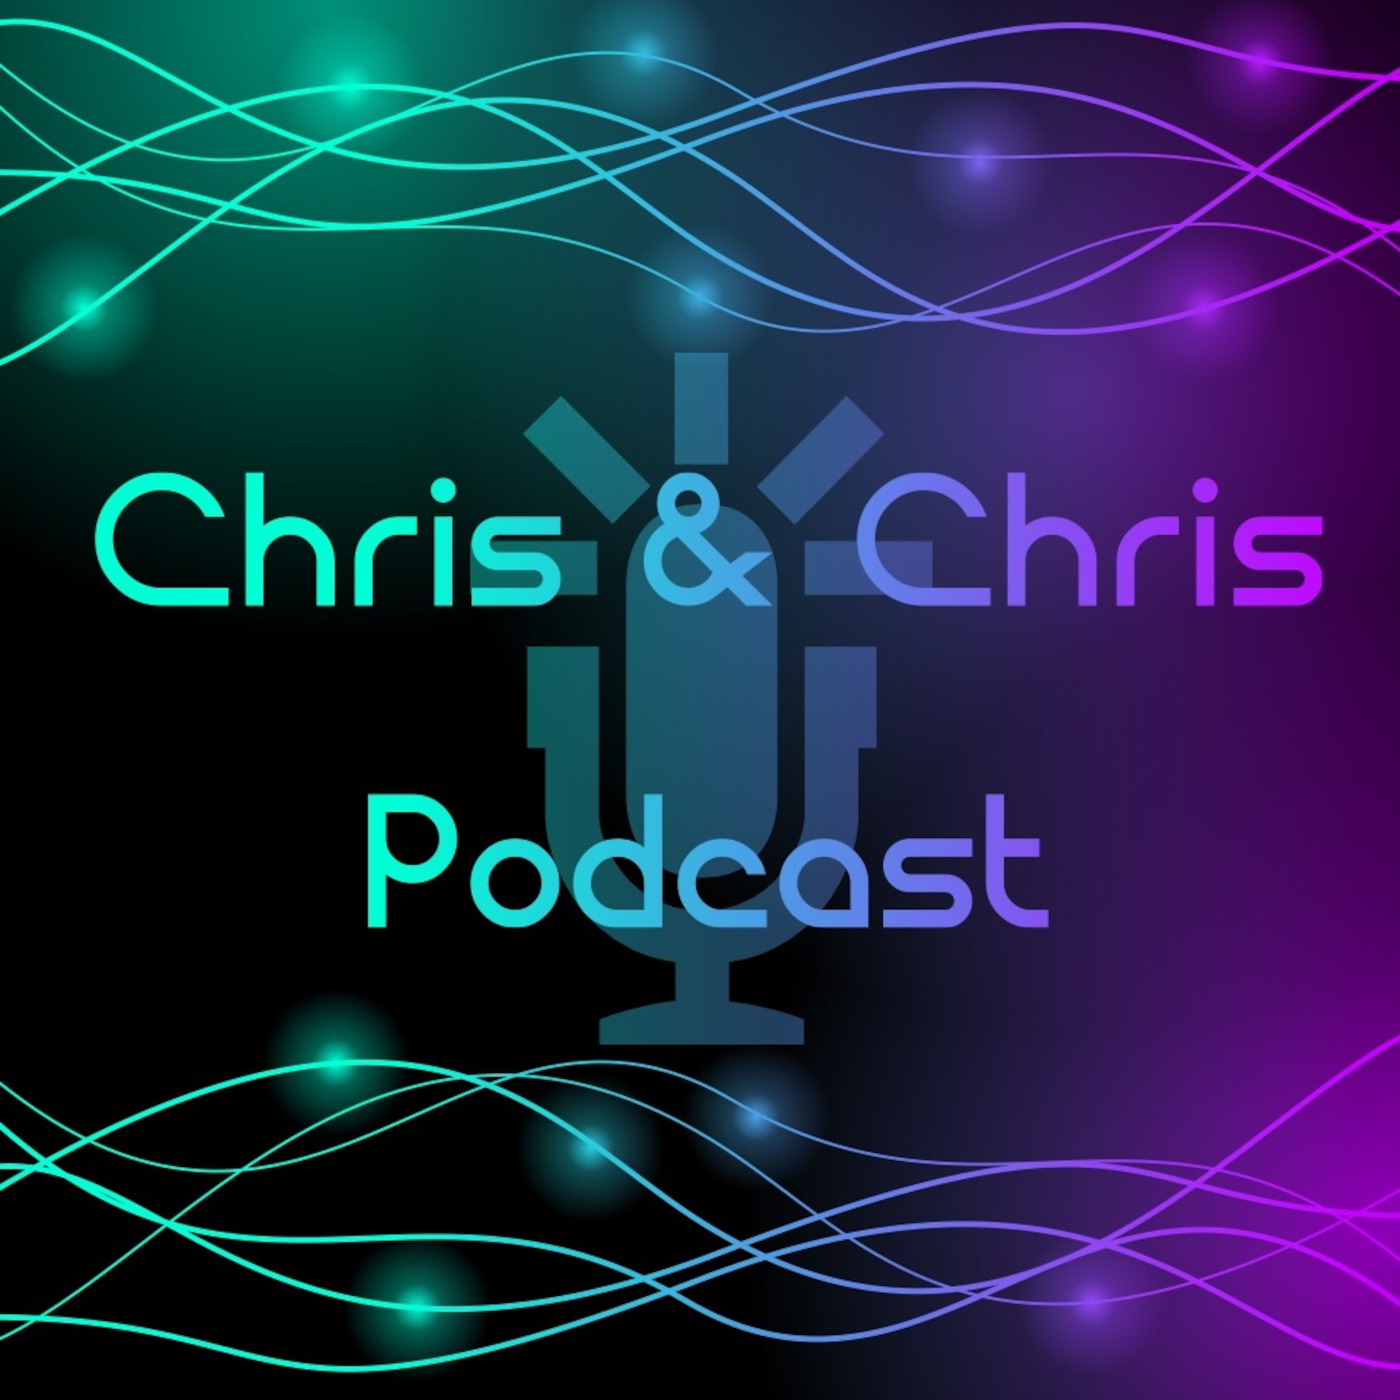 Chris & Chris Podcast